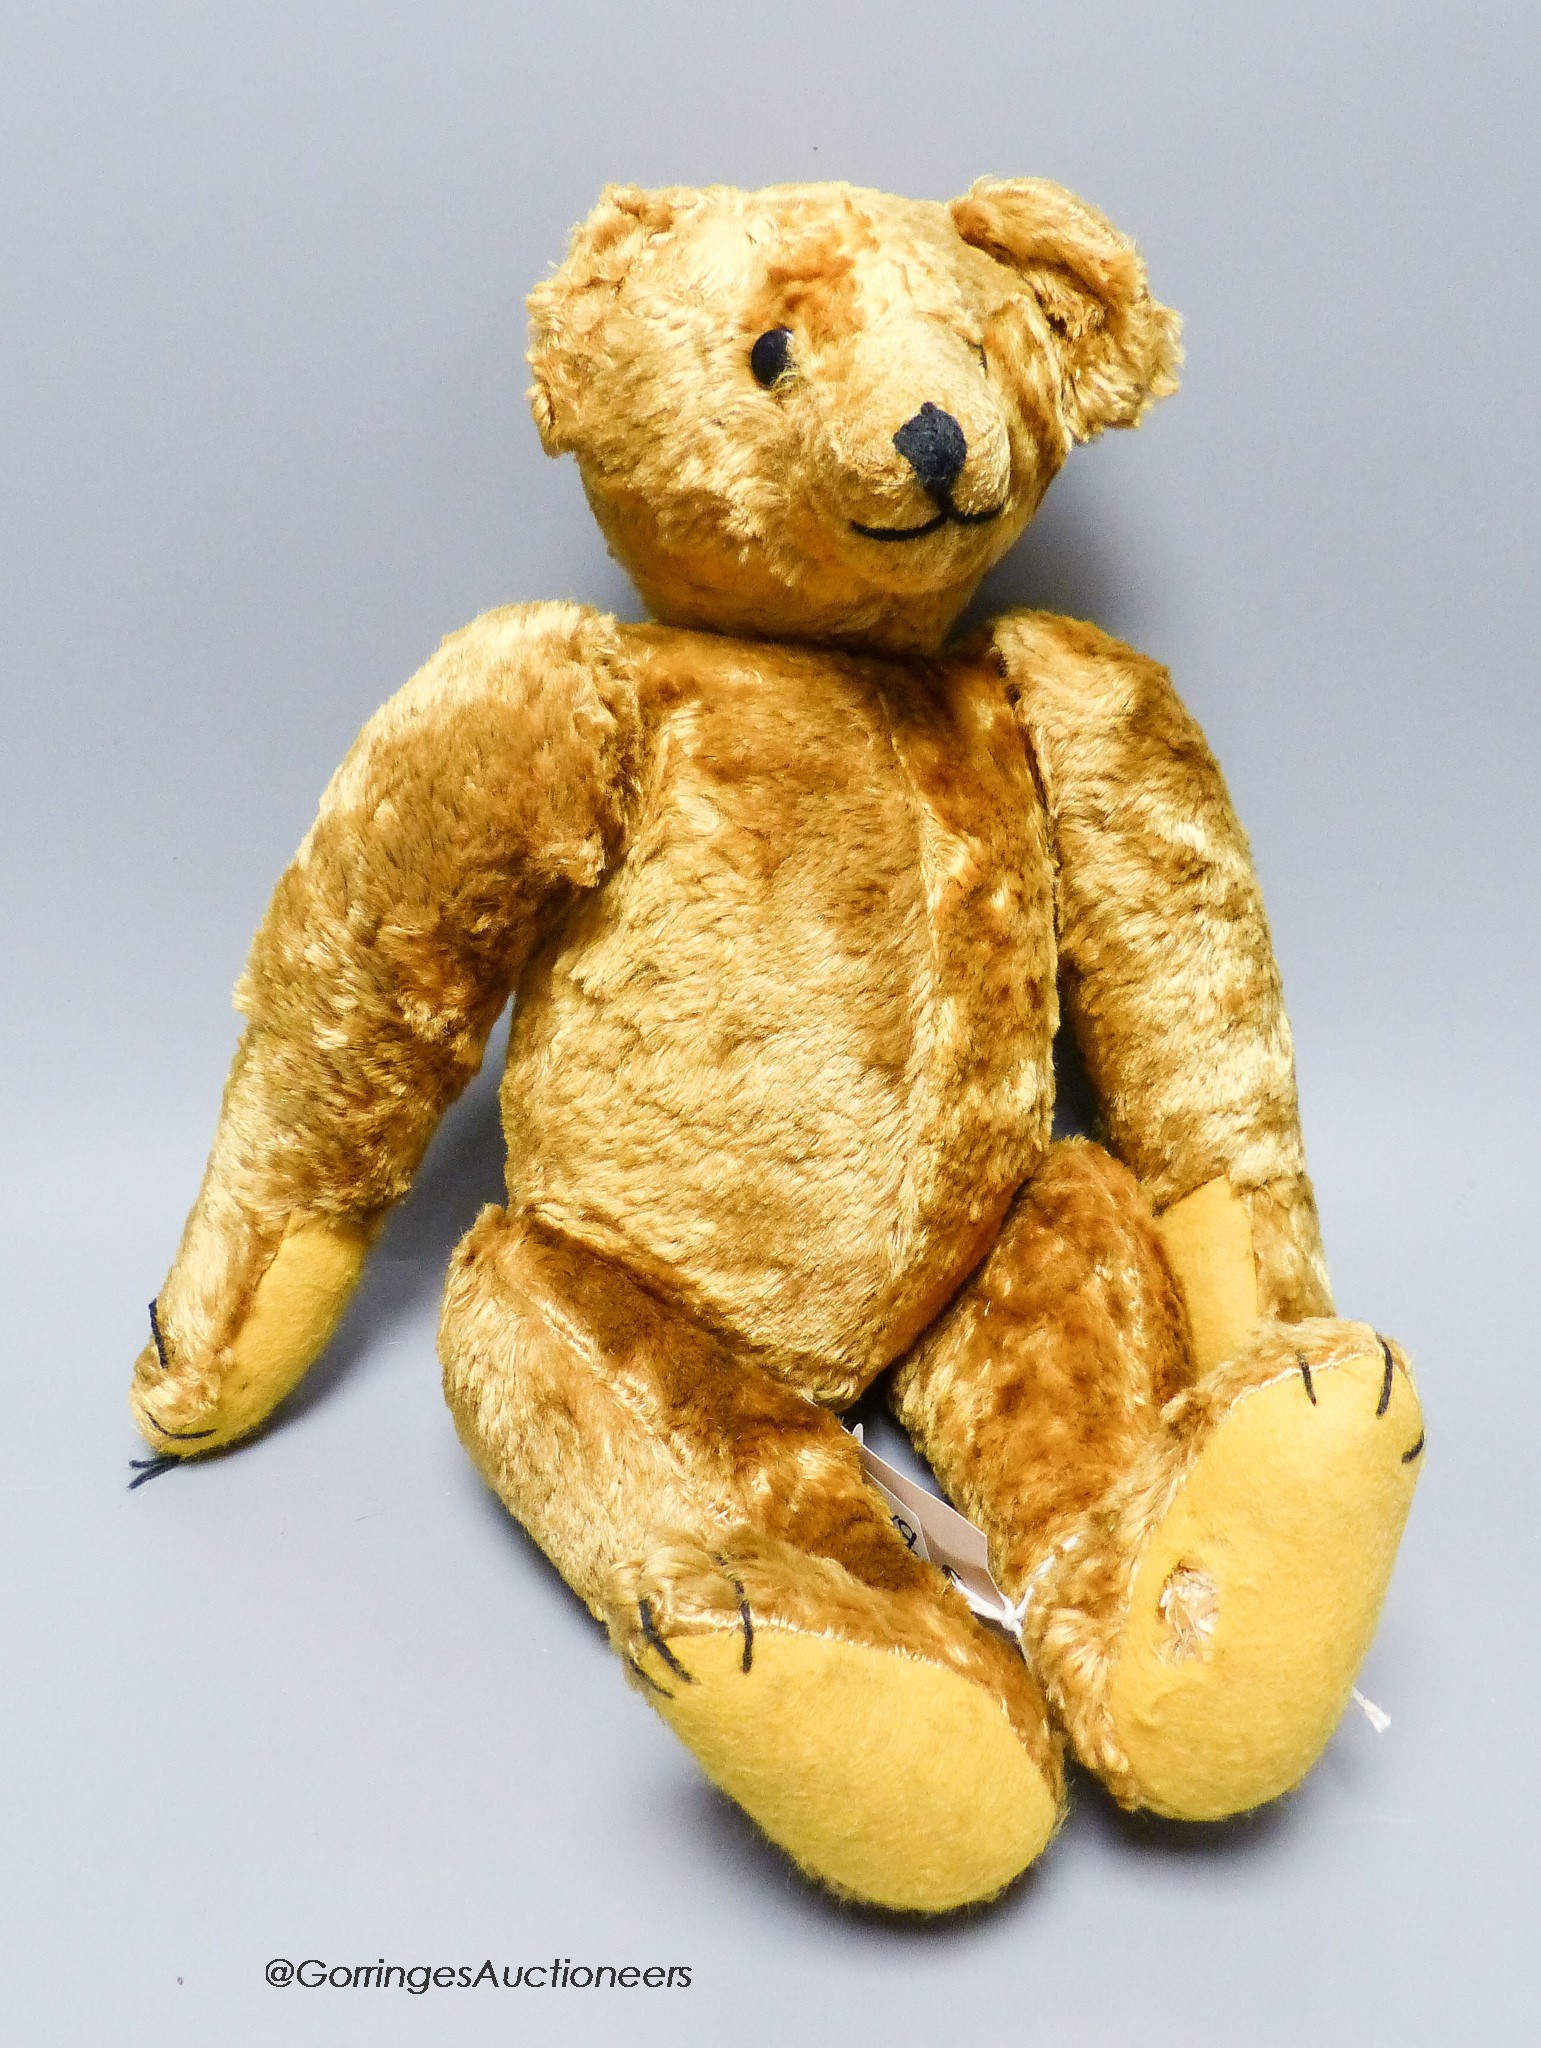 A cotton plush teddy bear, 'Bingo', straw-filled, 41cm